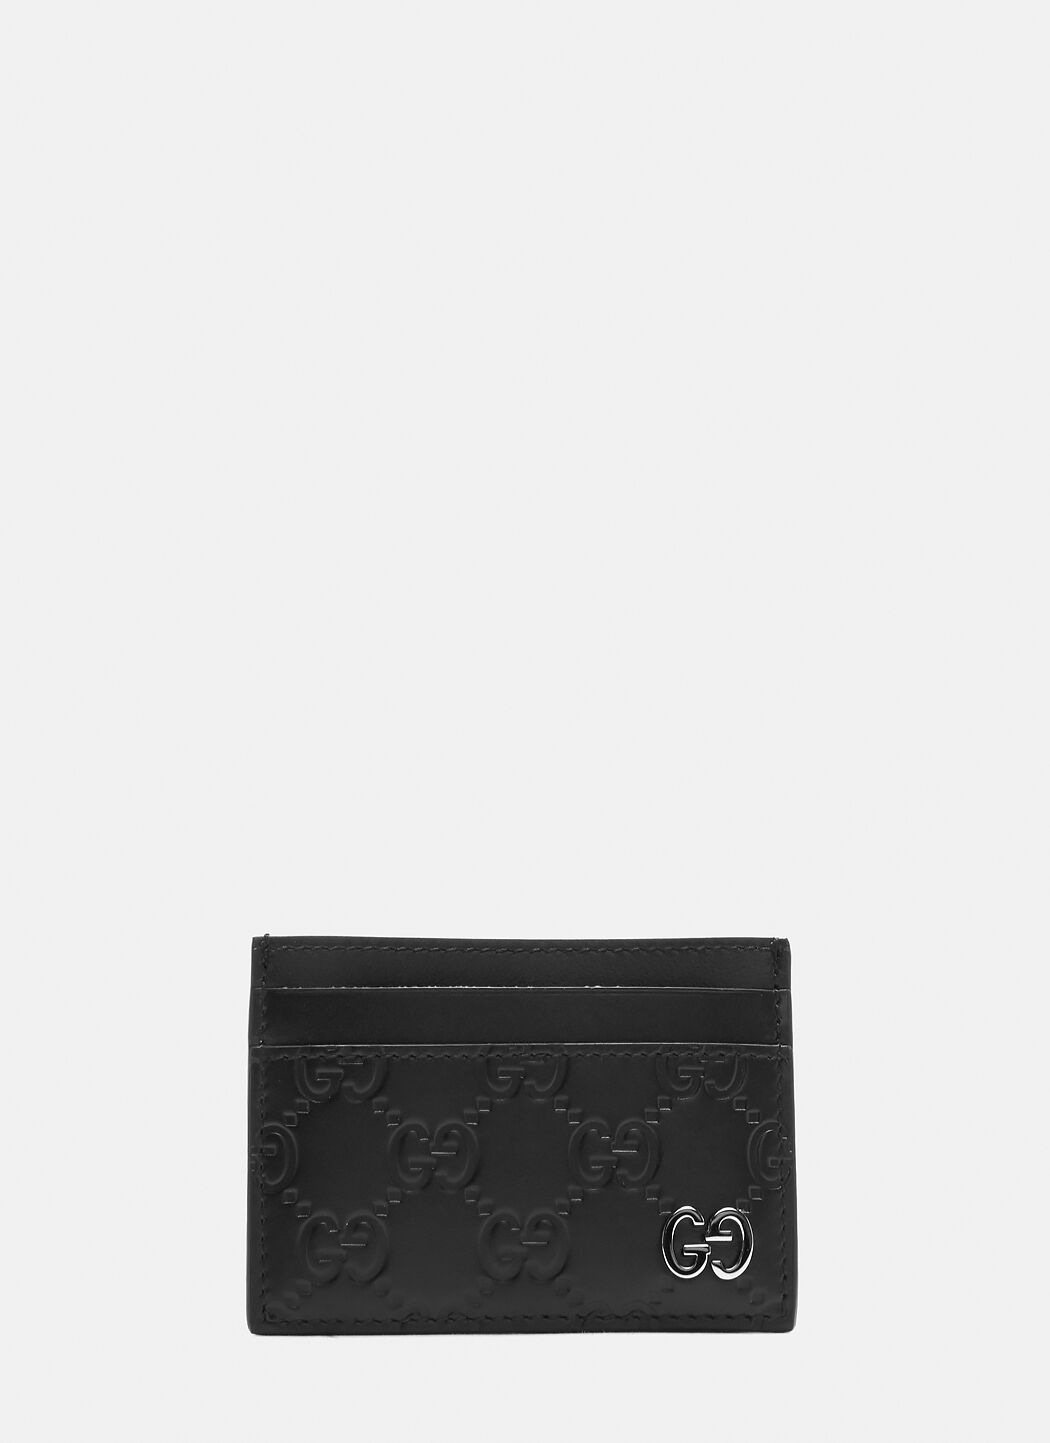 Saint Laurent Gucci シグネチャーカードケース ブラック sla0138034